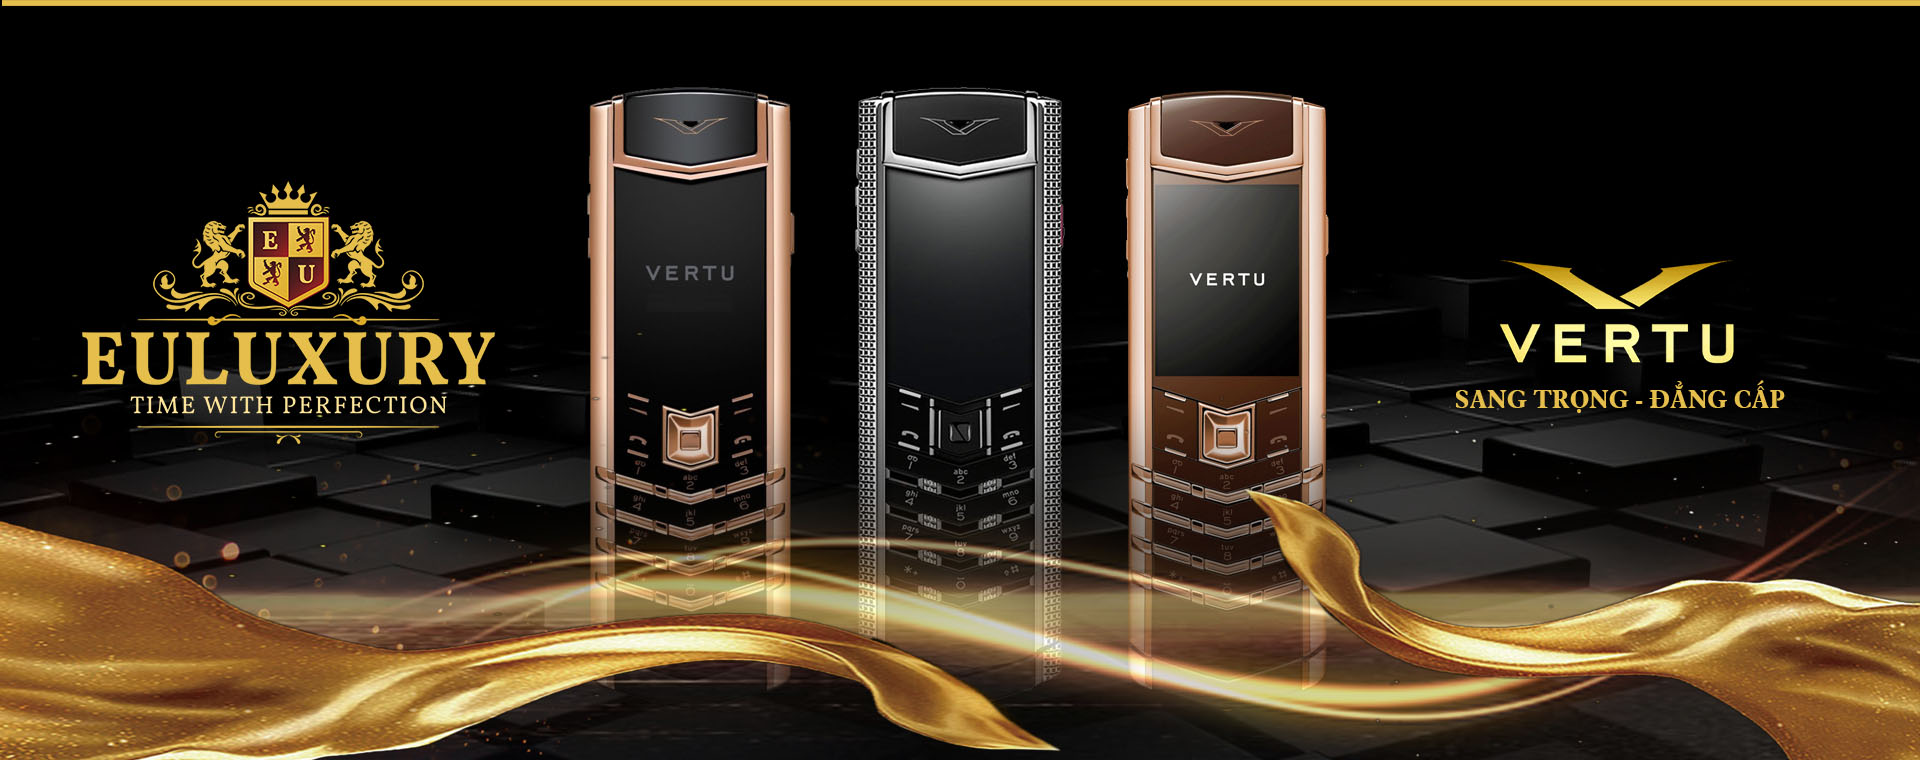 Tại sao điện thoại Vertu lại có mức giá đắt như vậy? 